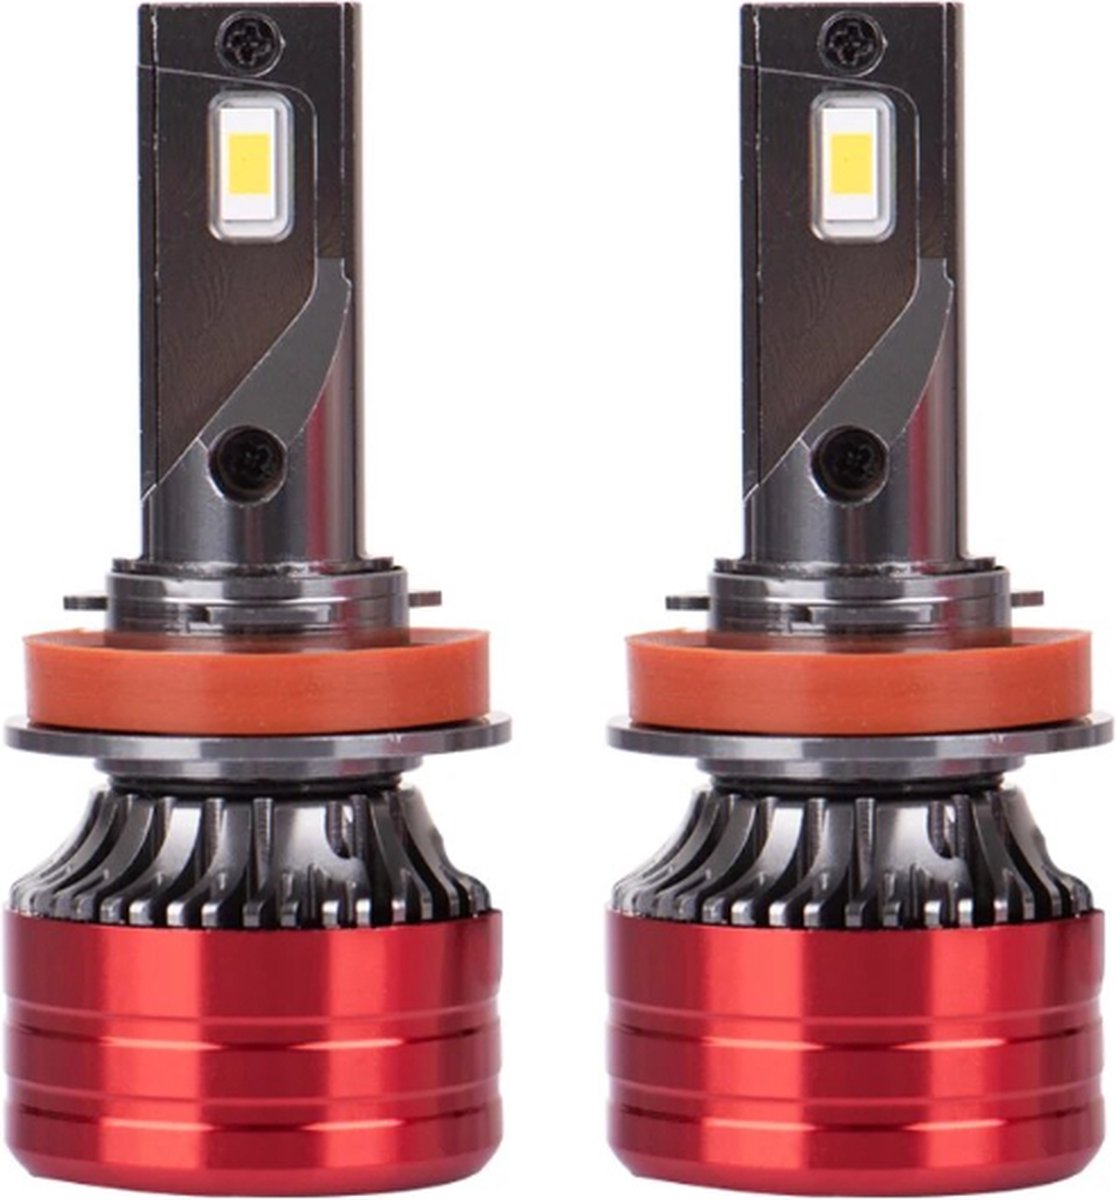 TLVX H11 Mini Turbo LED lampen 29.600 Lumen 6000k Helder Wit (set 2 stuks) CANBUS EMC adapter, Extra Fel, CSP LED CHIP 96 Watt Auto – Vrachtwagen - Scooter - Motor - Dimlicht - Grootlicht – Mistlicht -Koplampen - Autolamp - Autolampen 12V - 24V